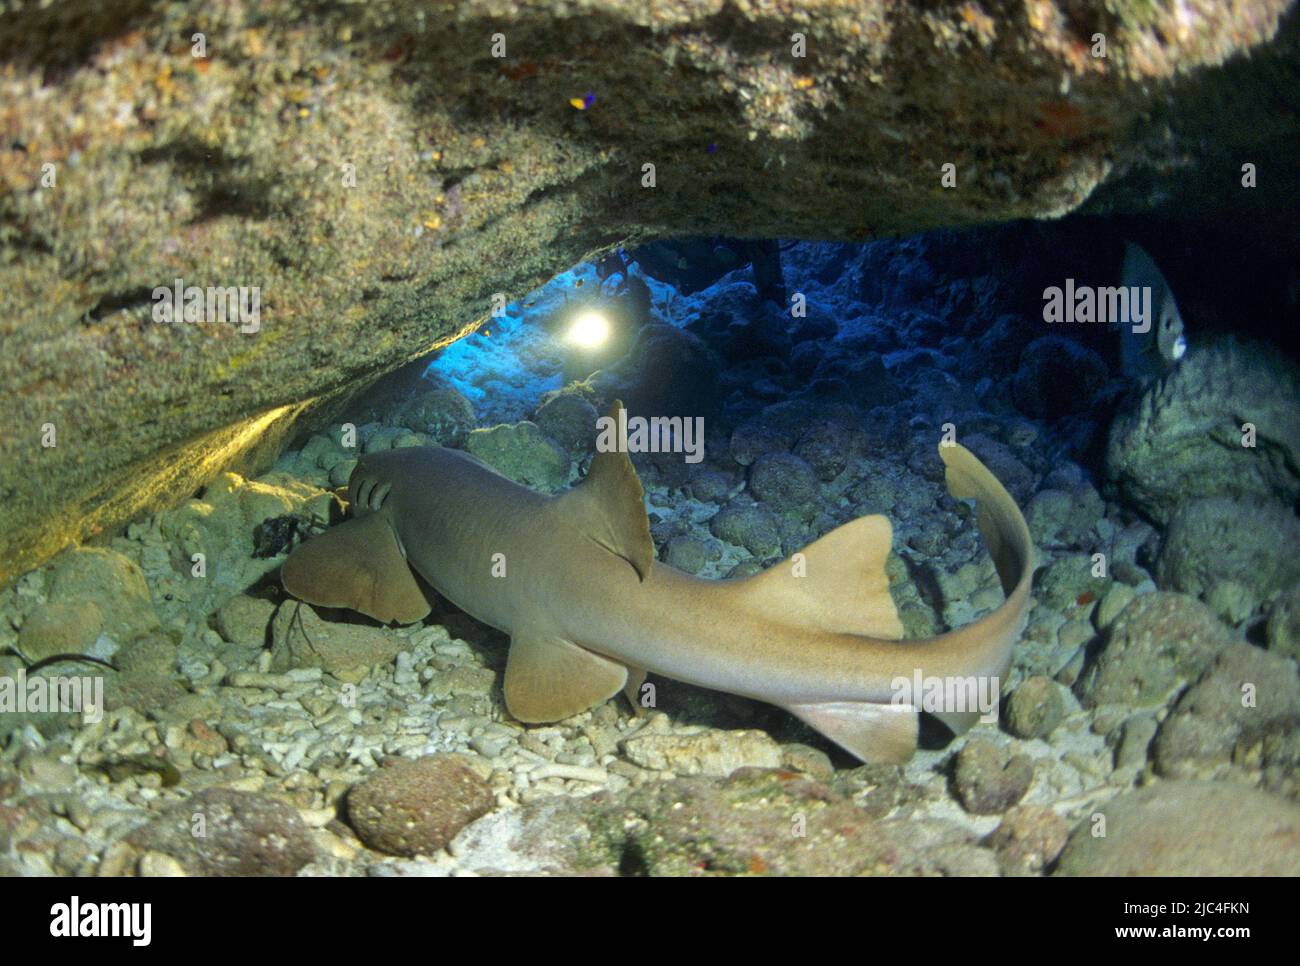 Scuba diver discover a Nurse Shark (Ginglymostoma cirratum) in a cave, Playa Larga, Bay of Pigs, Giron, Cuba, Caribbean Stock Photo